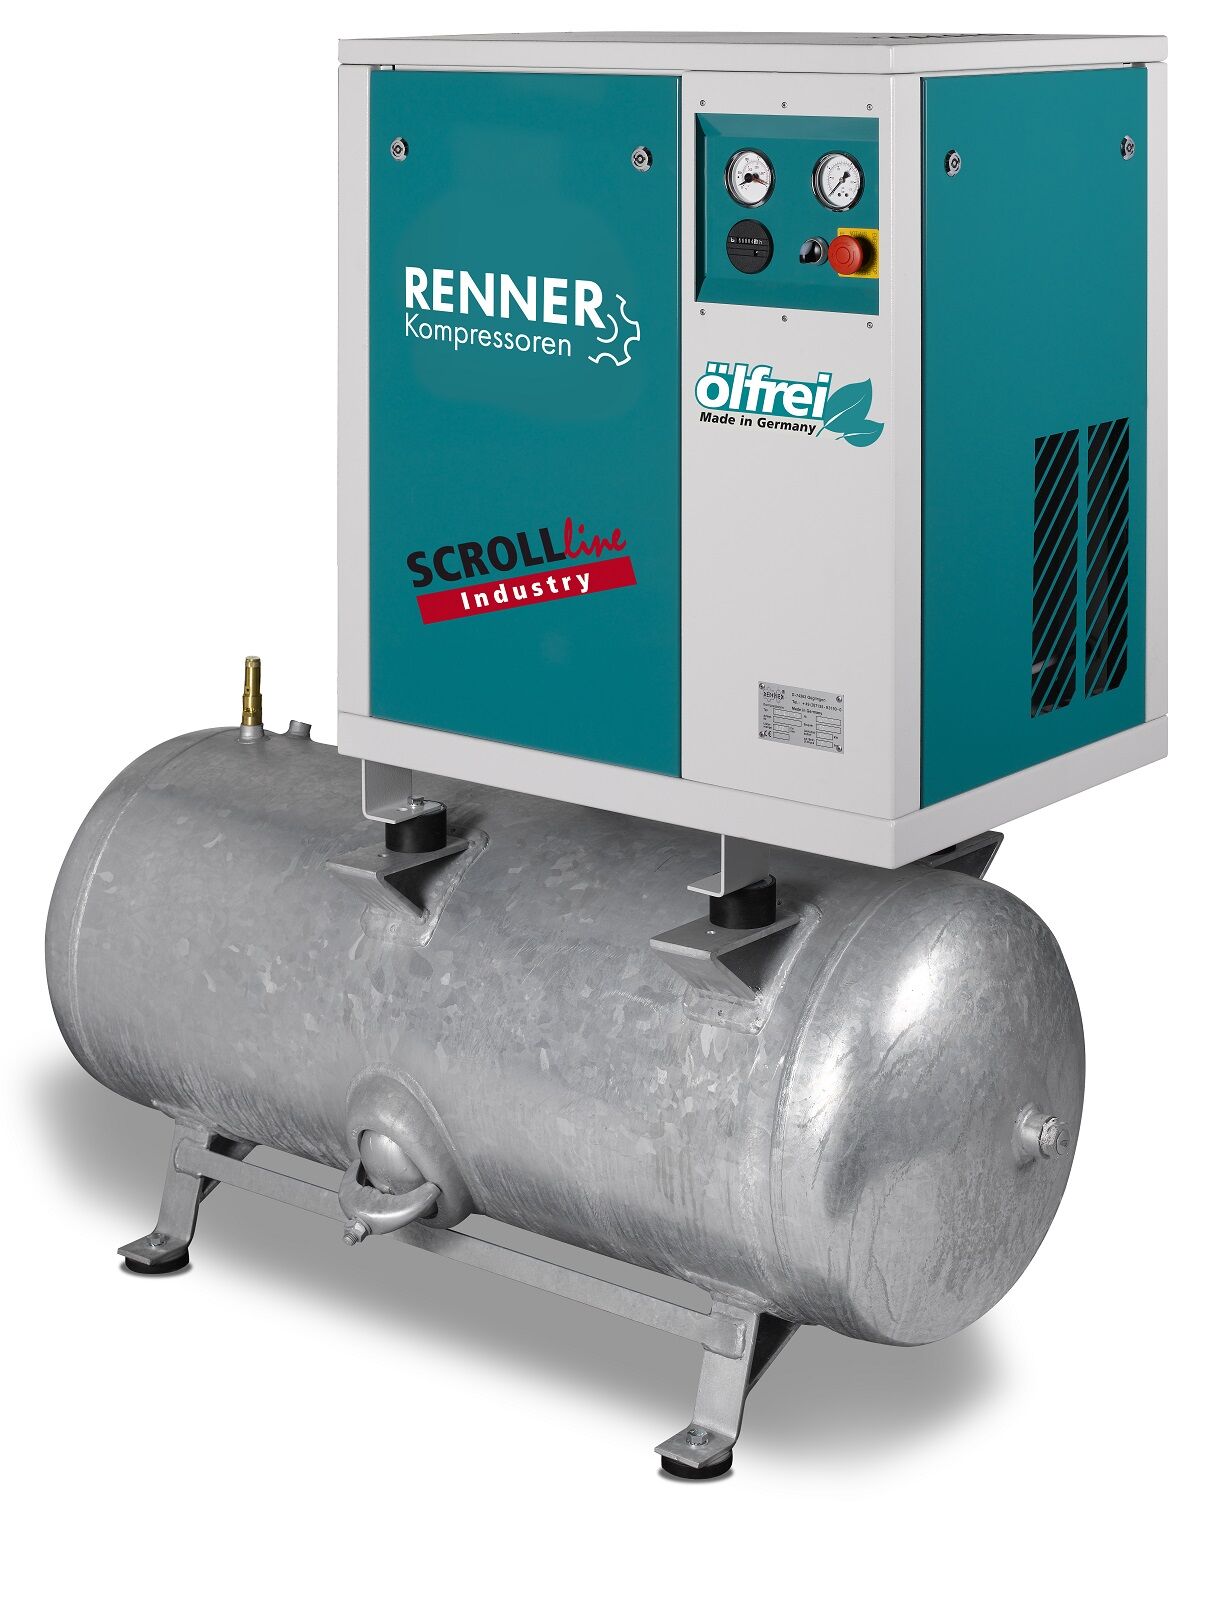 RENNER-Kompressor SLD-I 7,5 auf 250 Liter Druckbehälter - Industry ölfreier Scrollkompressor